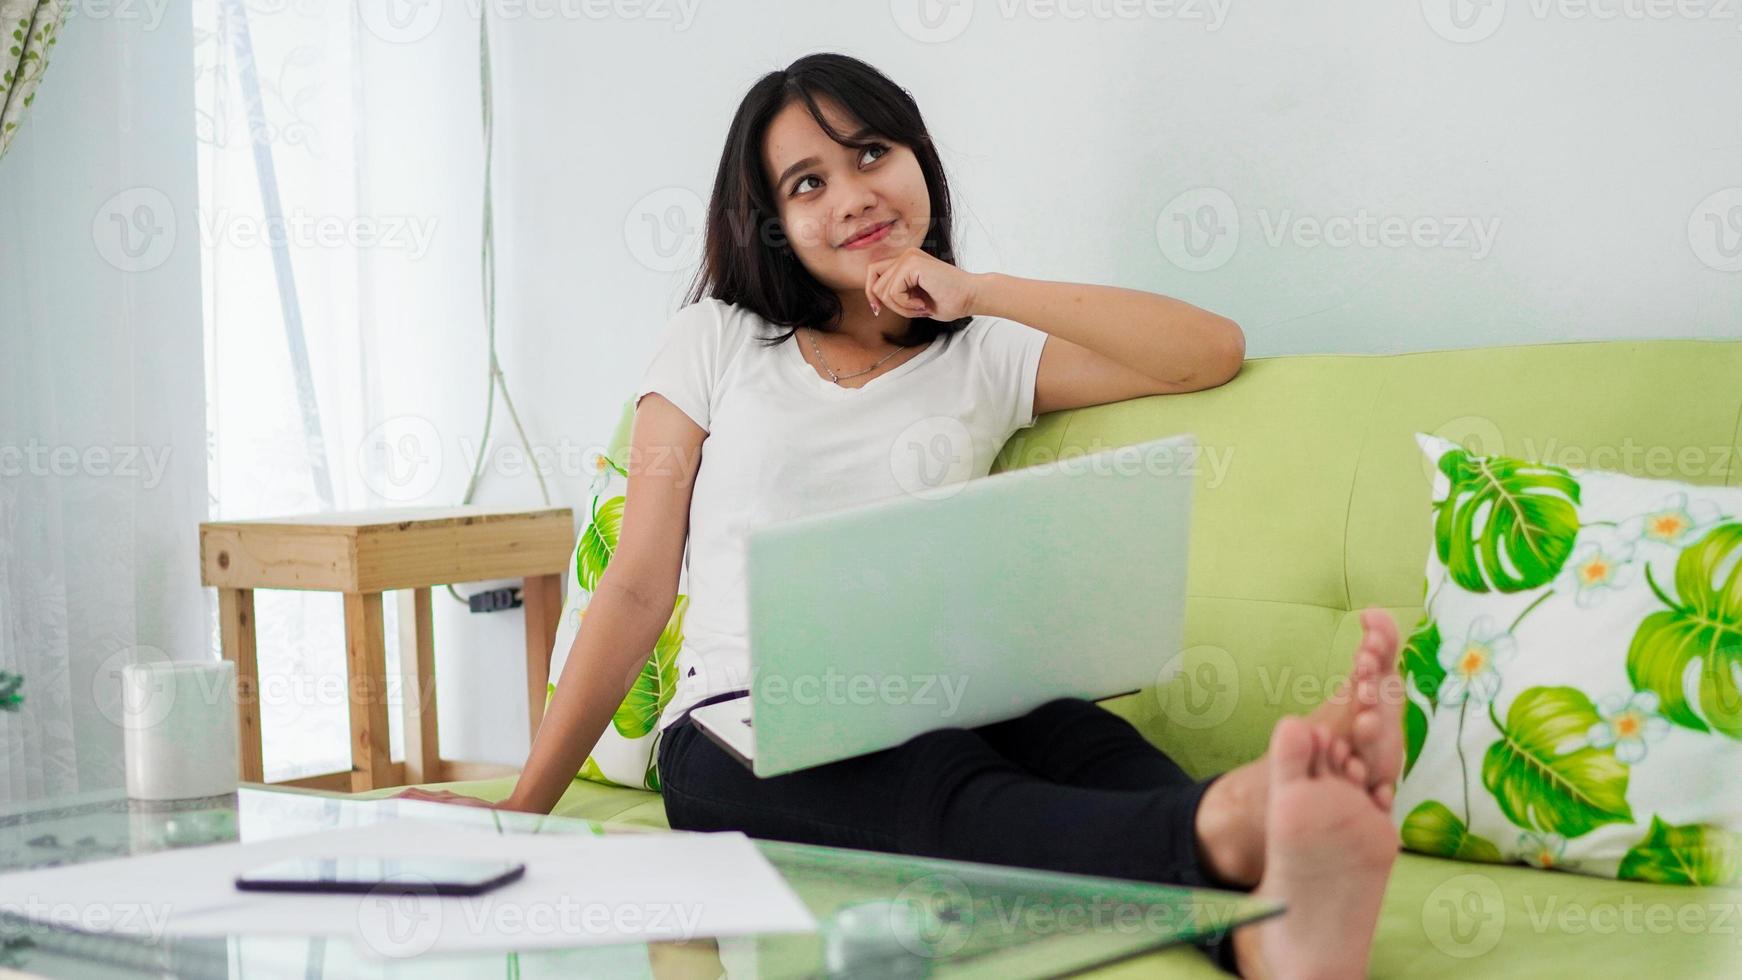 les femmes asiatiques assises sur une chaise travaillent à domicile sur un ordinateur portable et pensent à la solution du problème photo